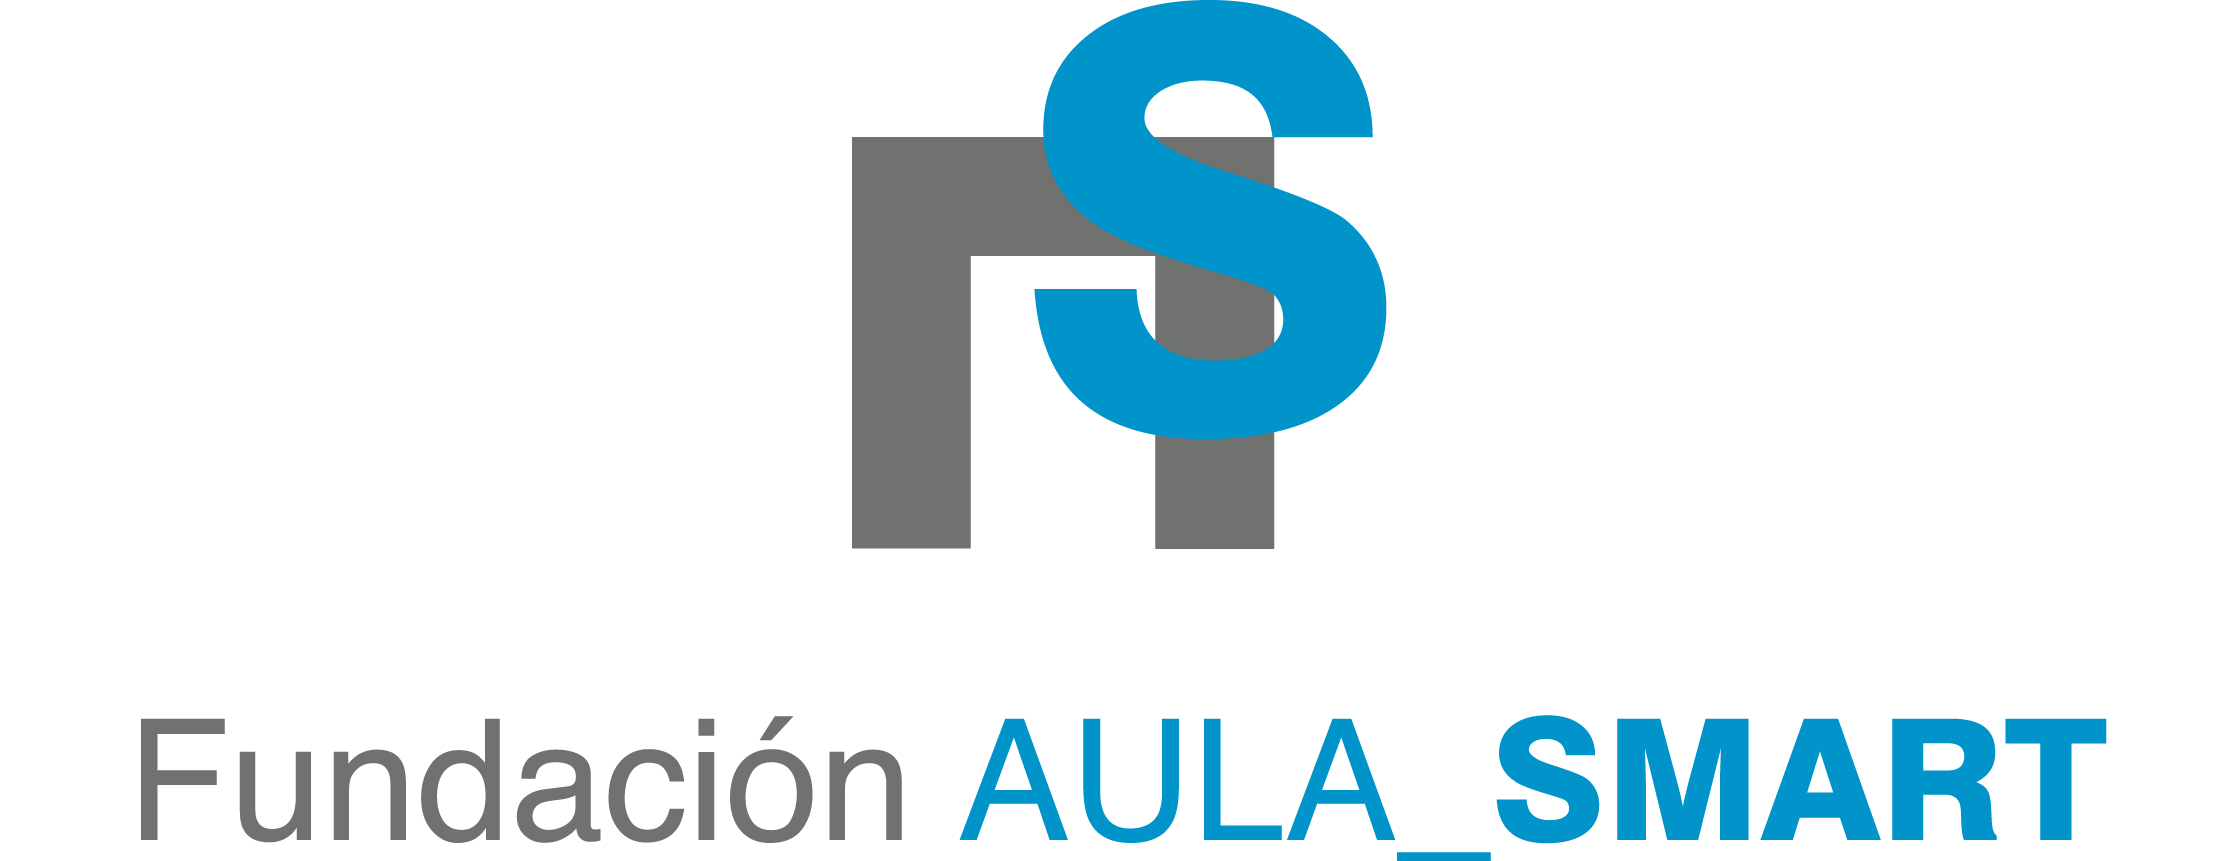 Logotipo Fundación AULA SMART